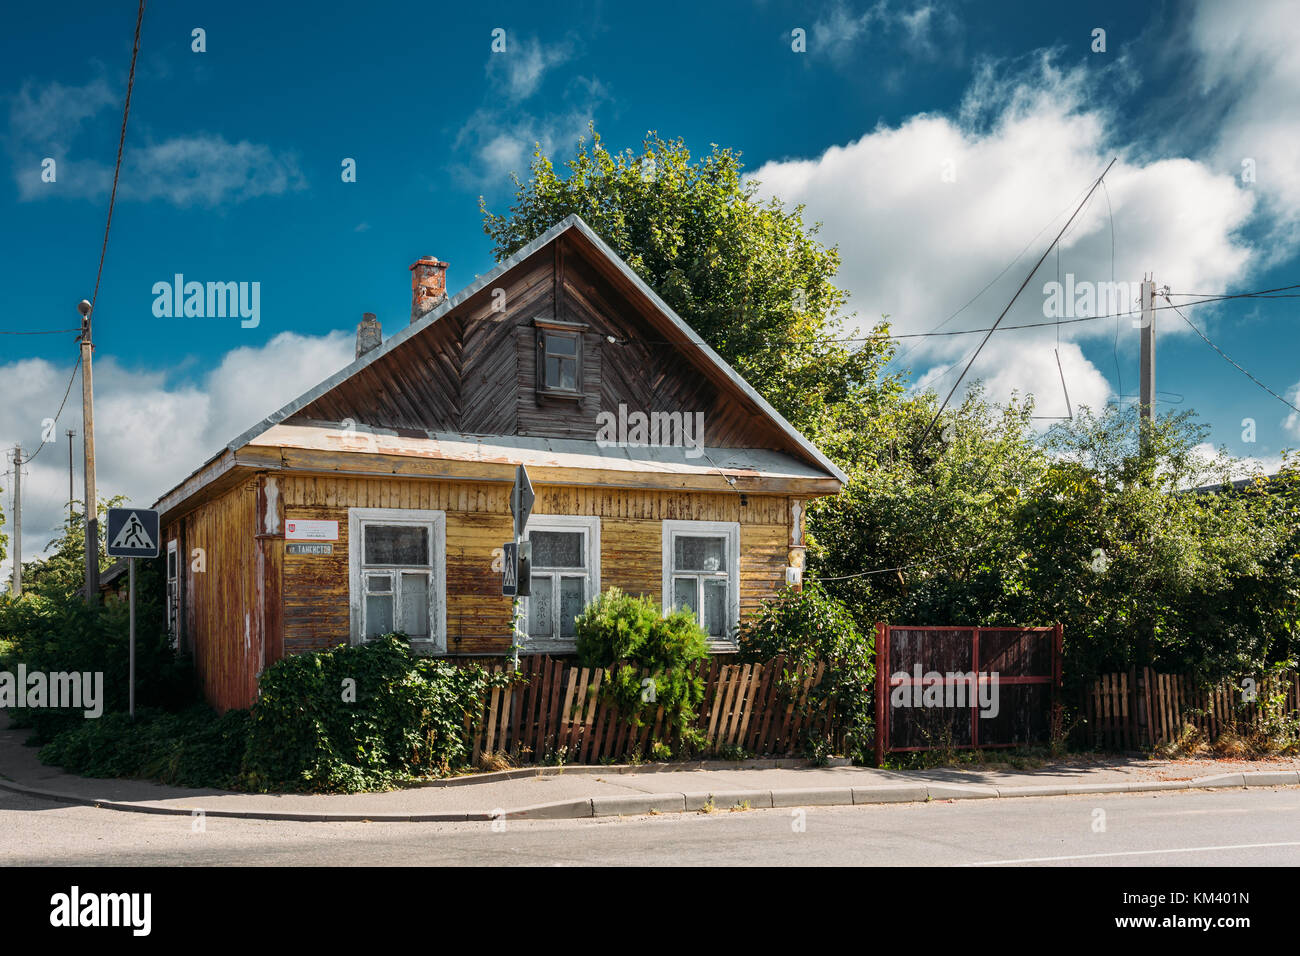 Typische Traditionelle Alte Russische Holz Haus Im Dorf Oder Die Landschaft Von Belarus Oder Russland Lander Stockfotografie Alamy